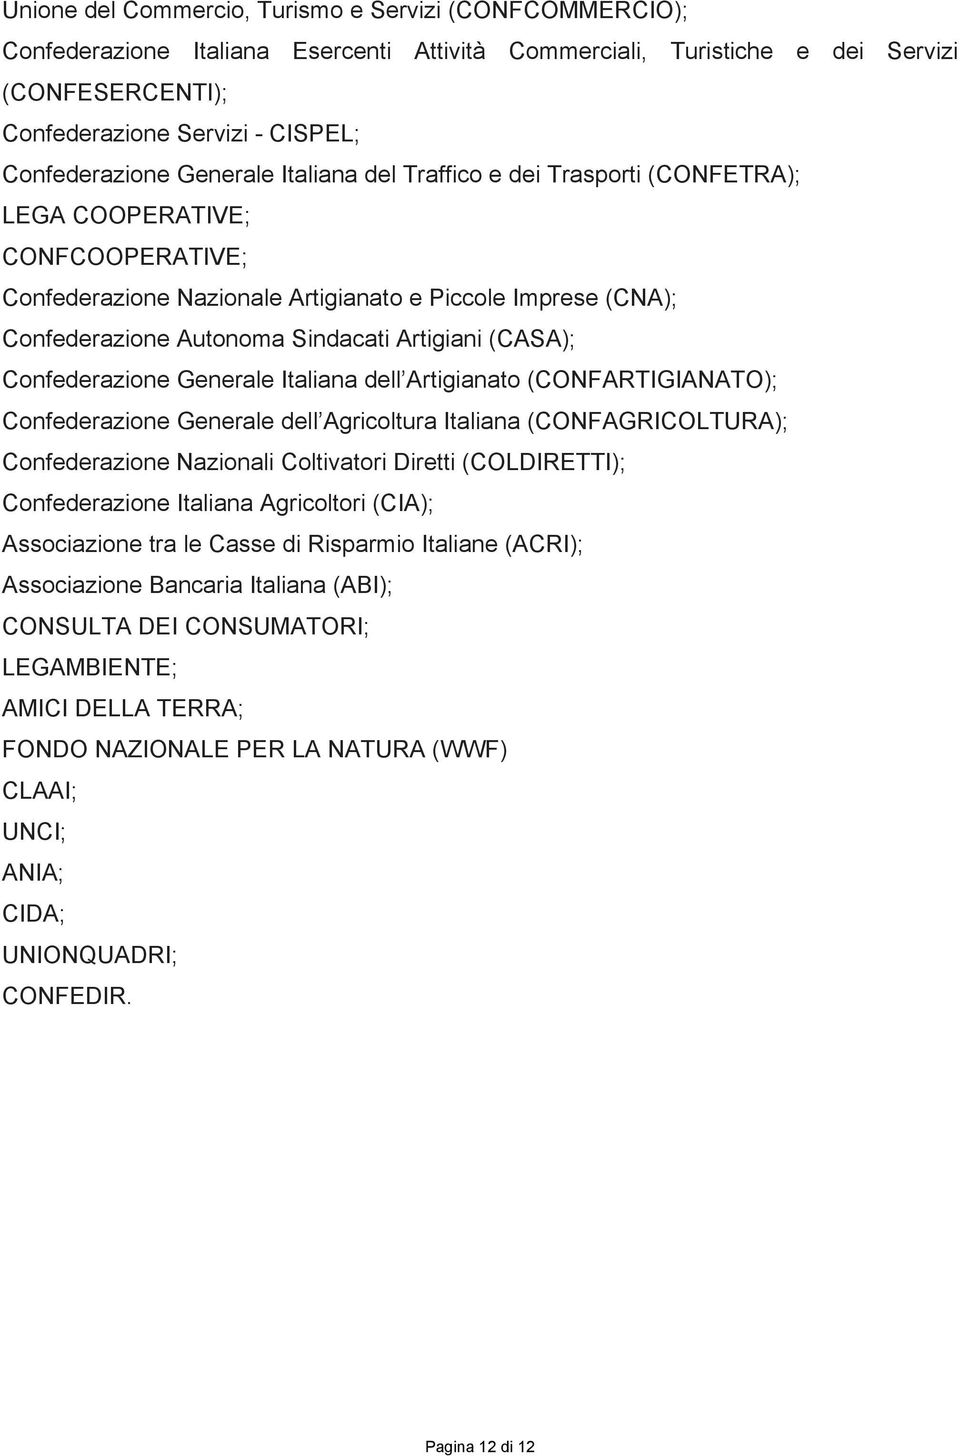 Sindacati Artigiani (CASA); Confederazione Generale Italiana dell Artigianato (CONFARTIGIANATO); Confederazione Generale dell Agricoltura Italiana (CONFAGRICOLTURA); Confederazione Nazionali